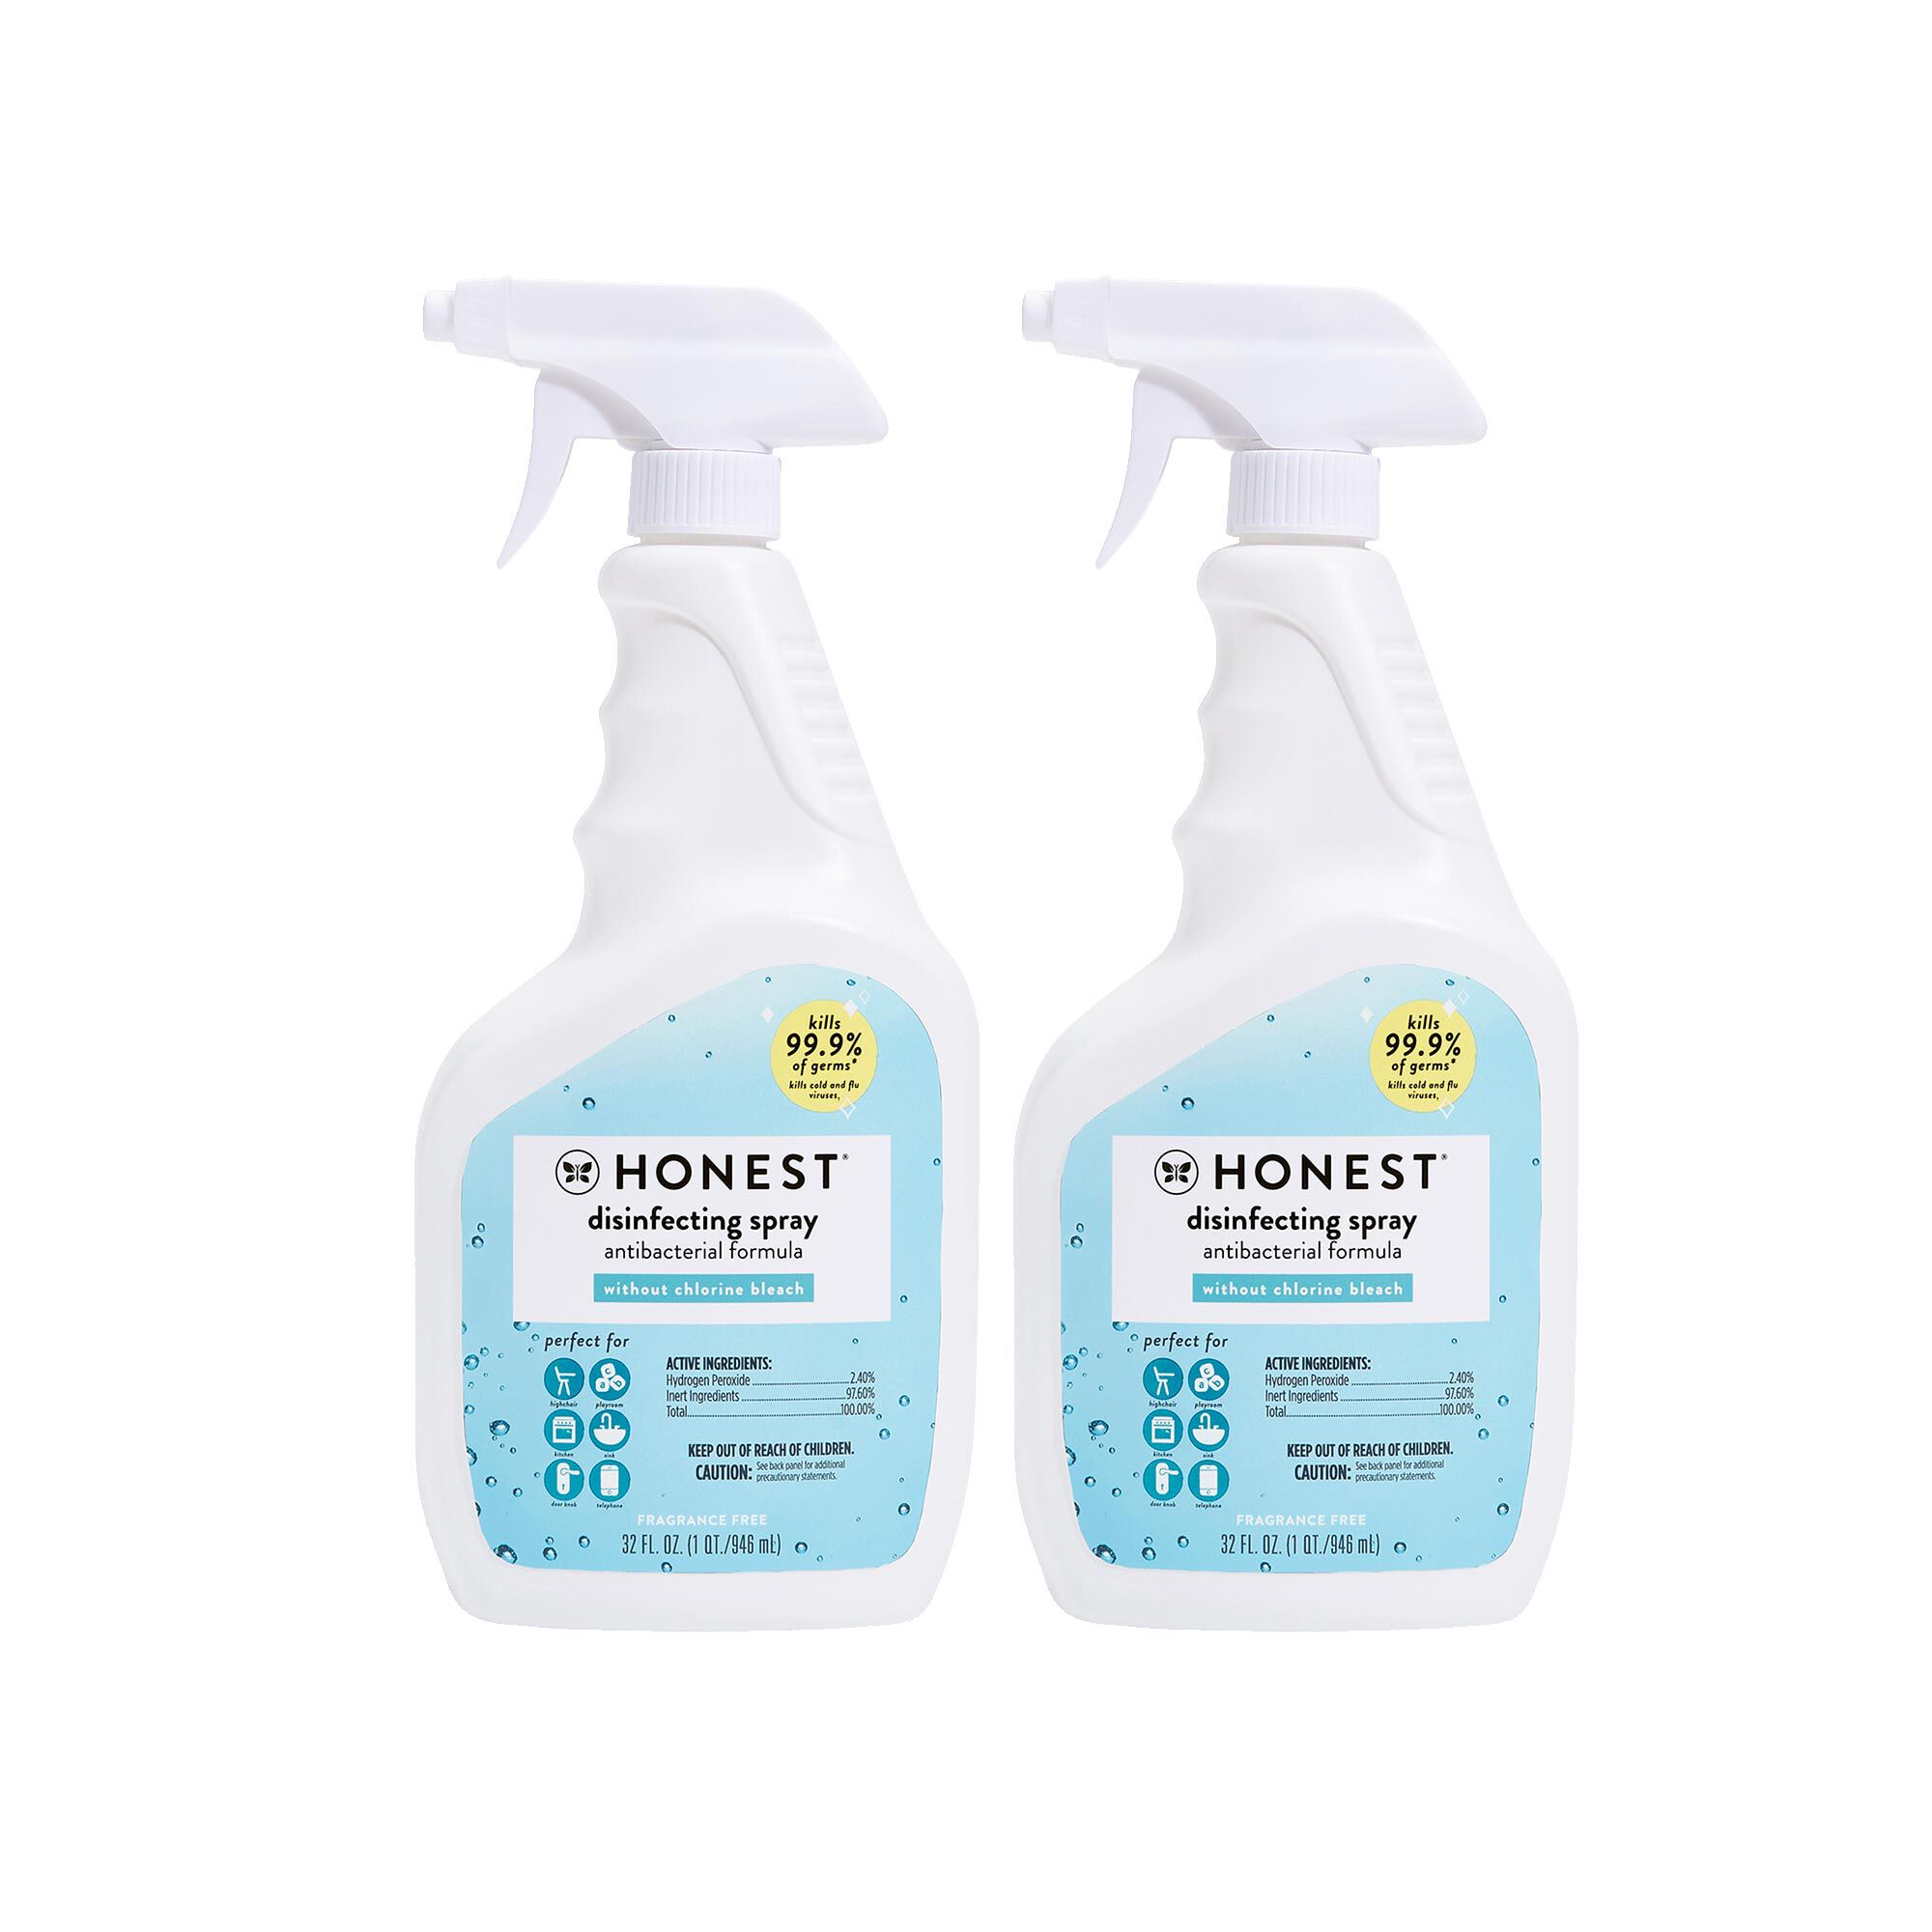 honest disinfectant spray bottles